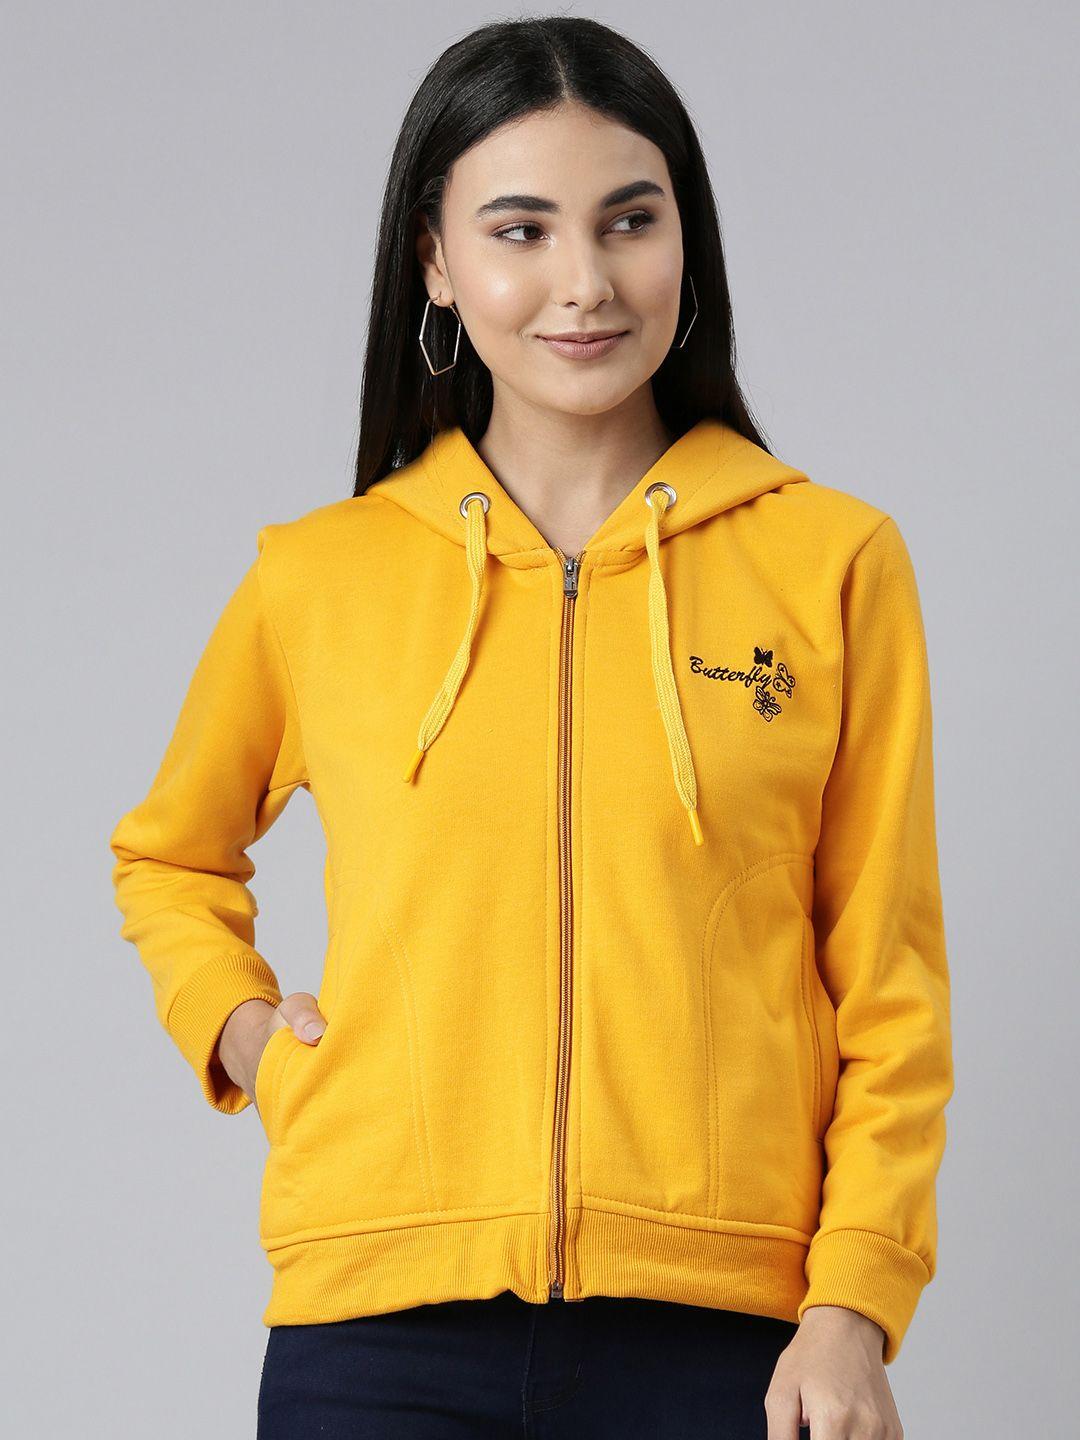 adbucks women mustard yellow embroidered hooded sweatshirt